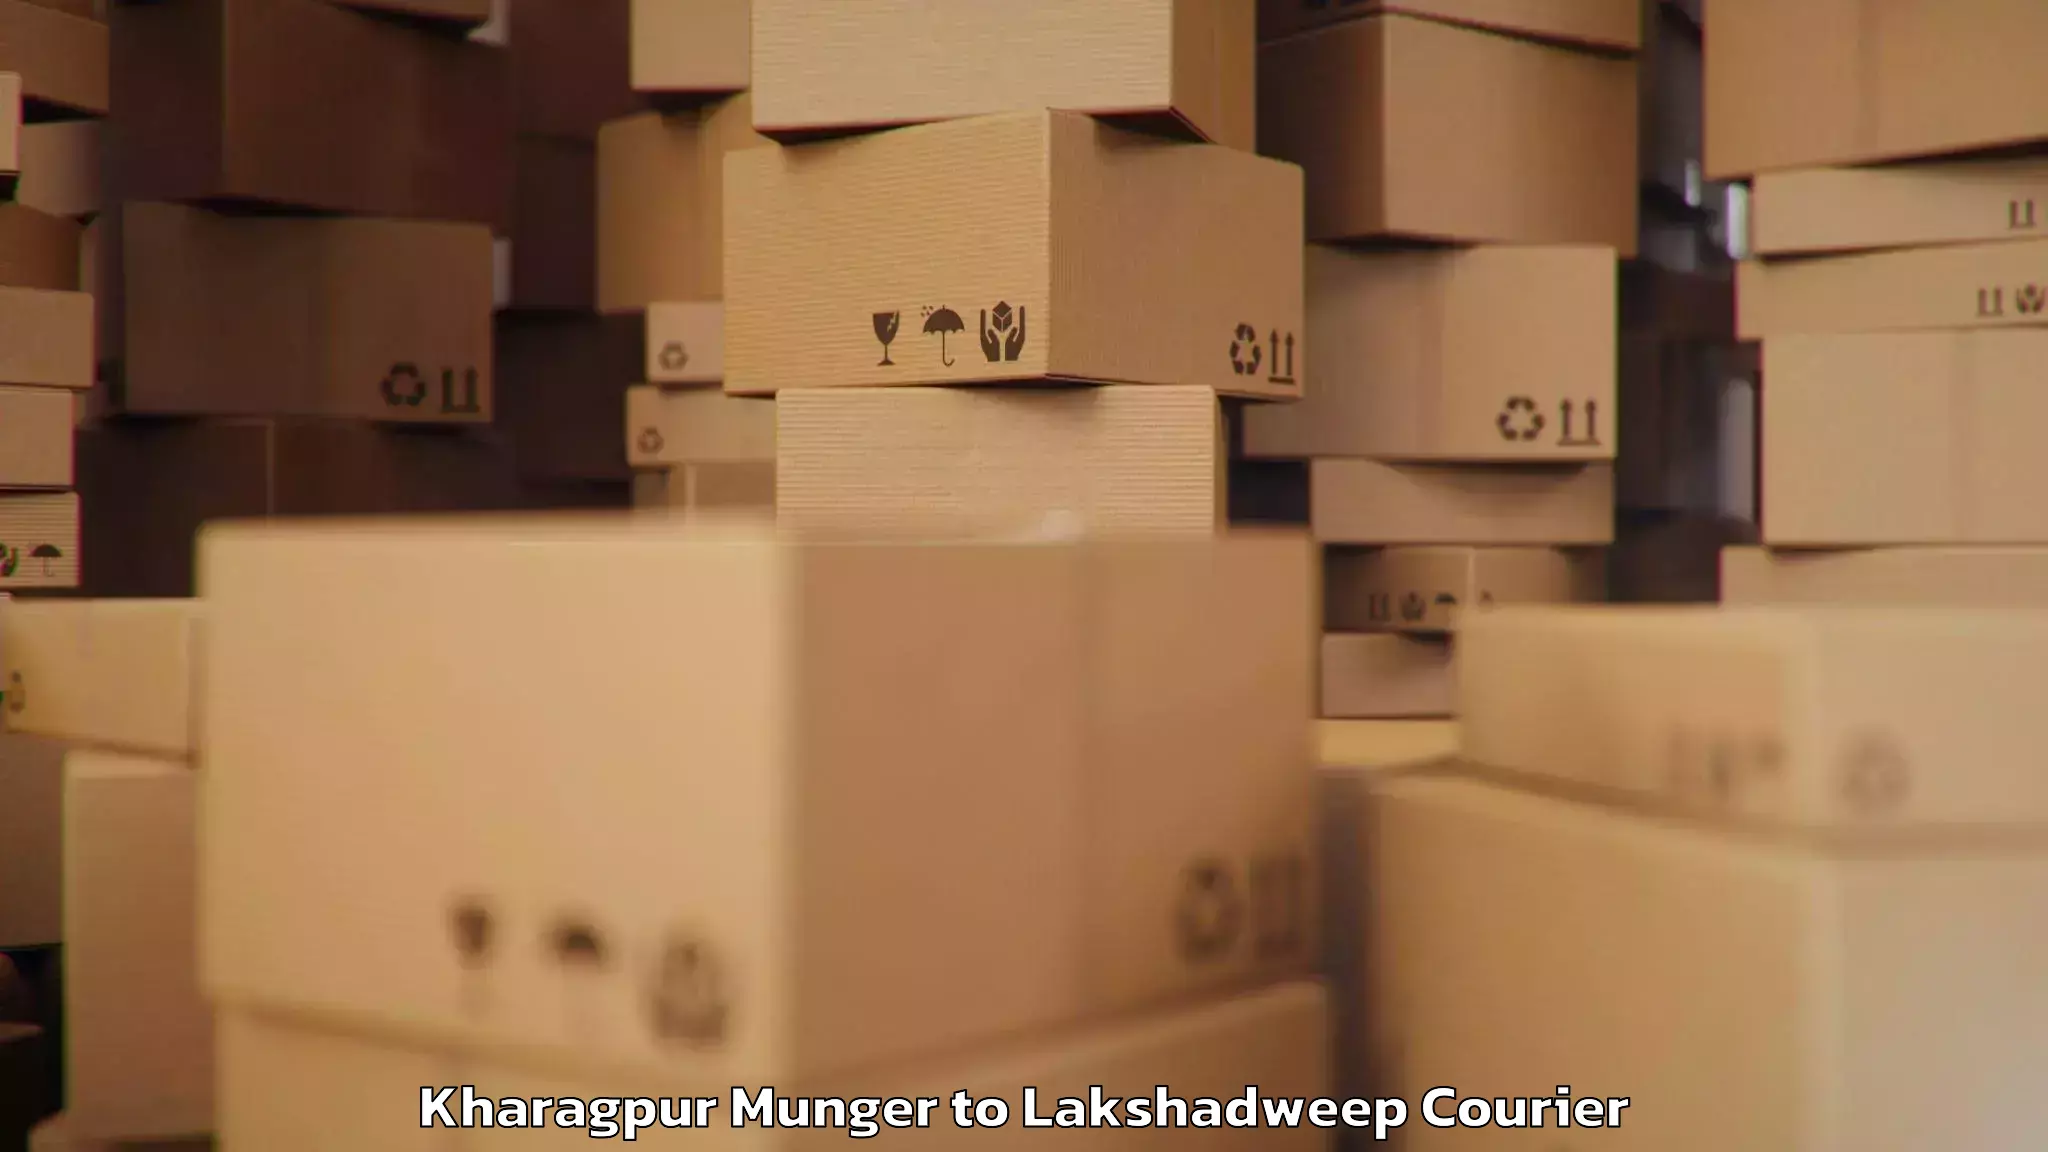 Urgent luggage shipment Kharagpur Munger to Lakshadweep